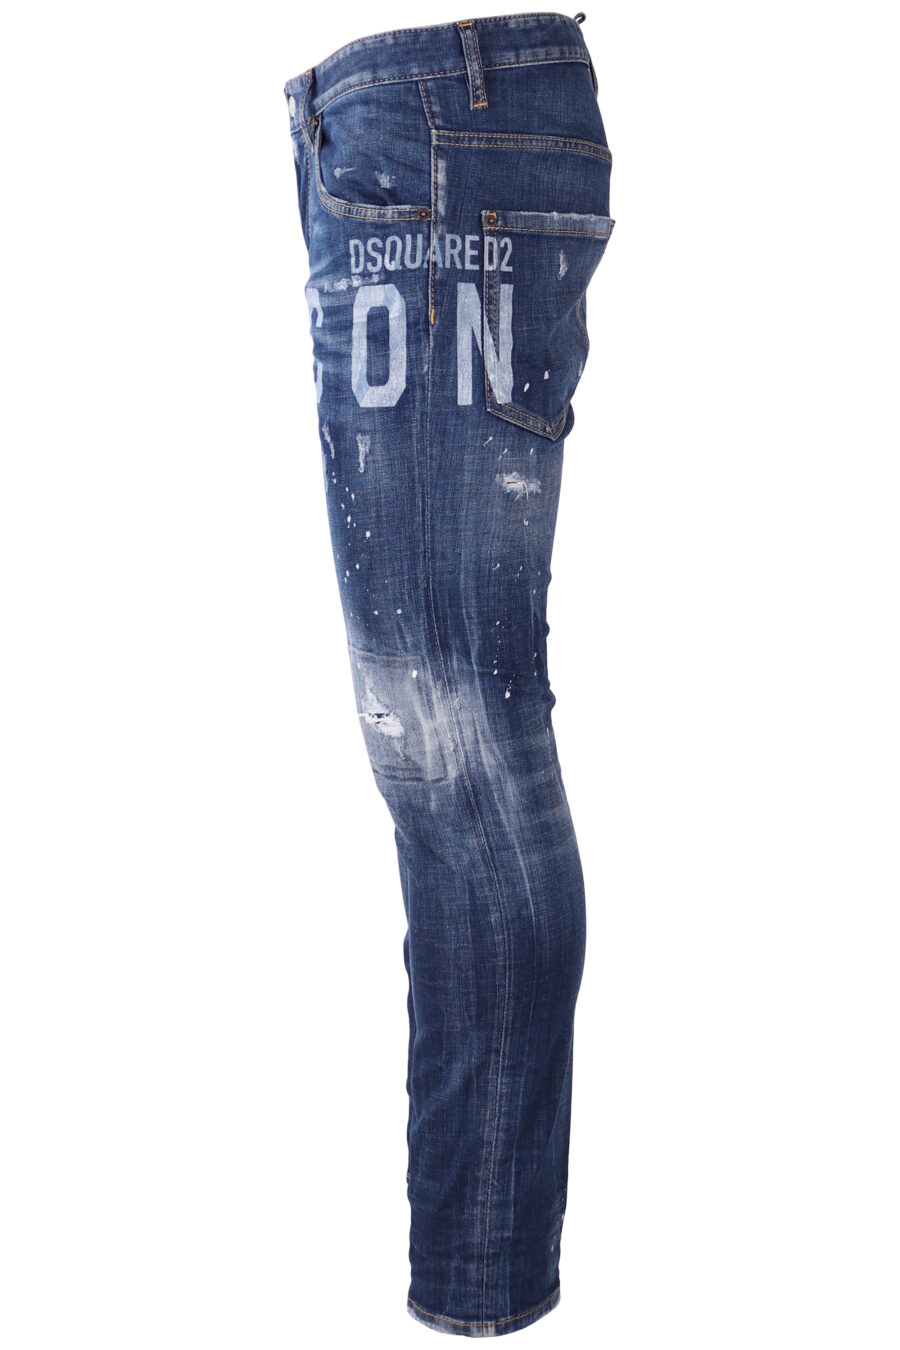 Pantalón vaquero "Skater" azul desgastado con logo "icon" blanco - IMG 1749